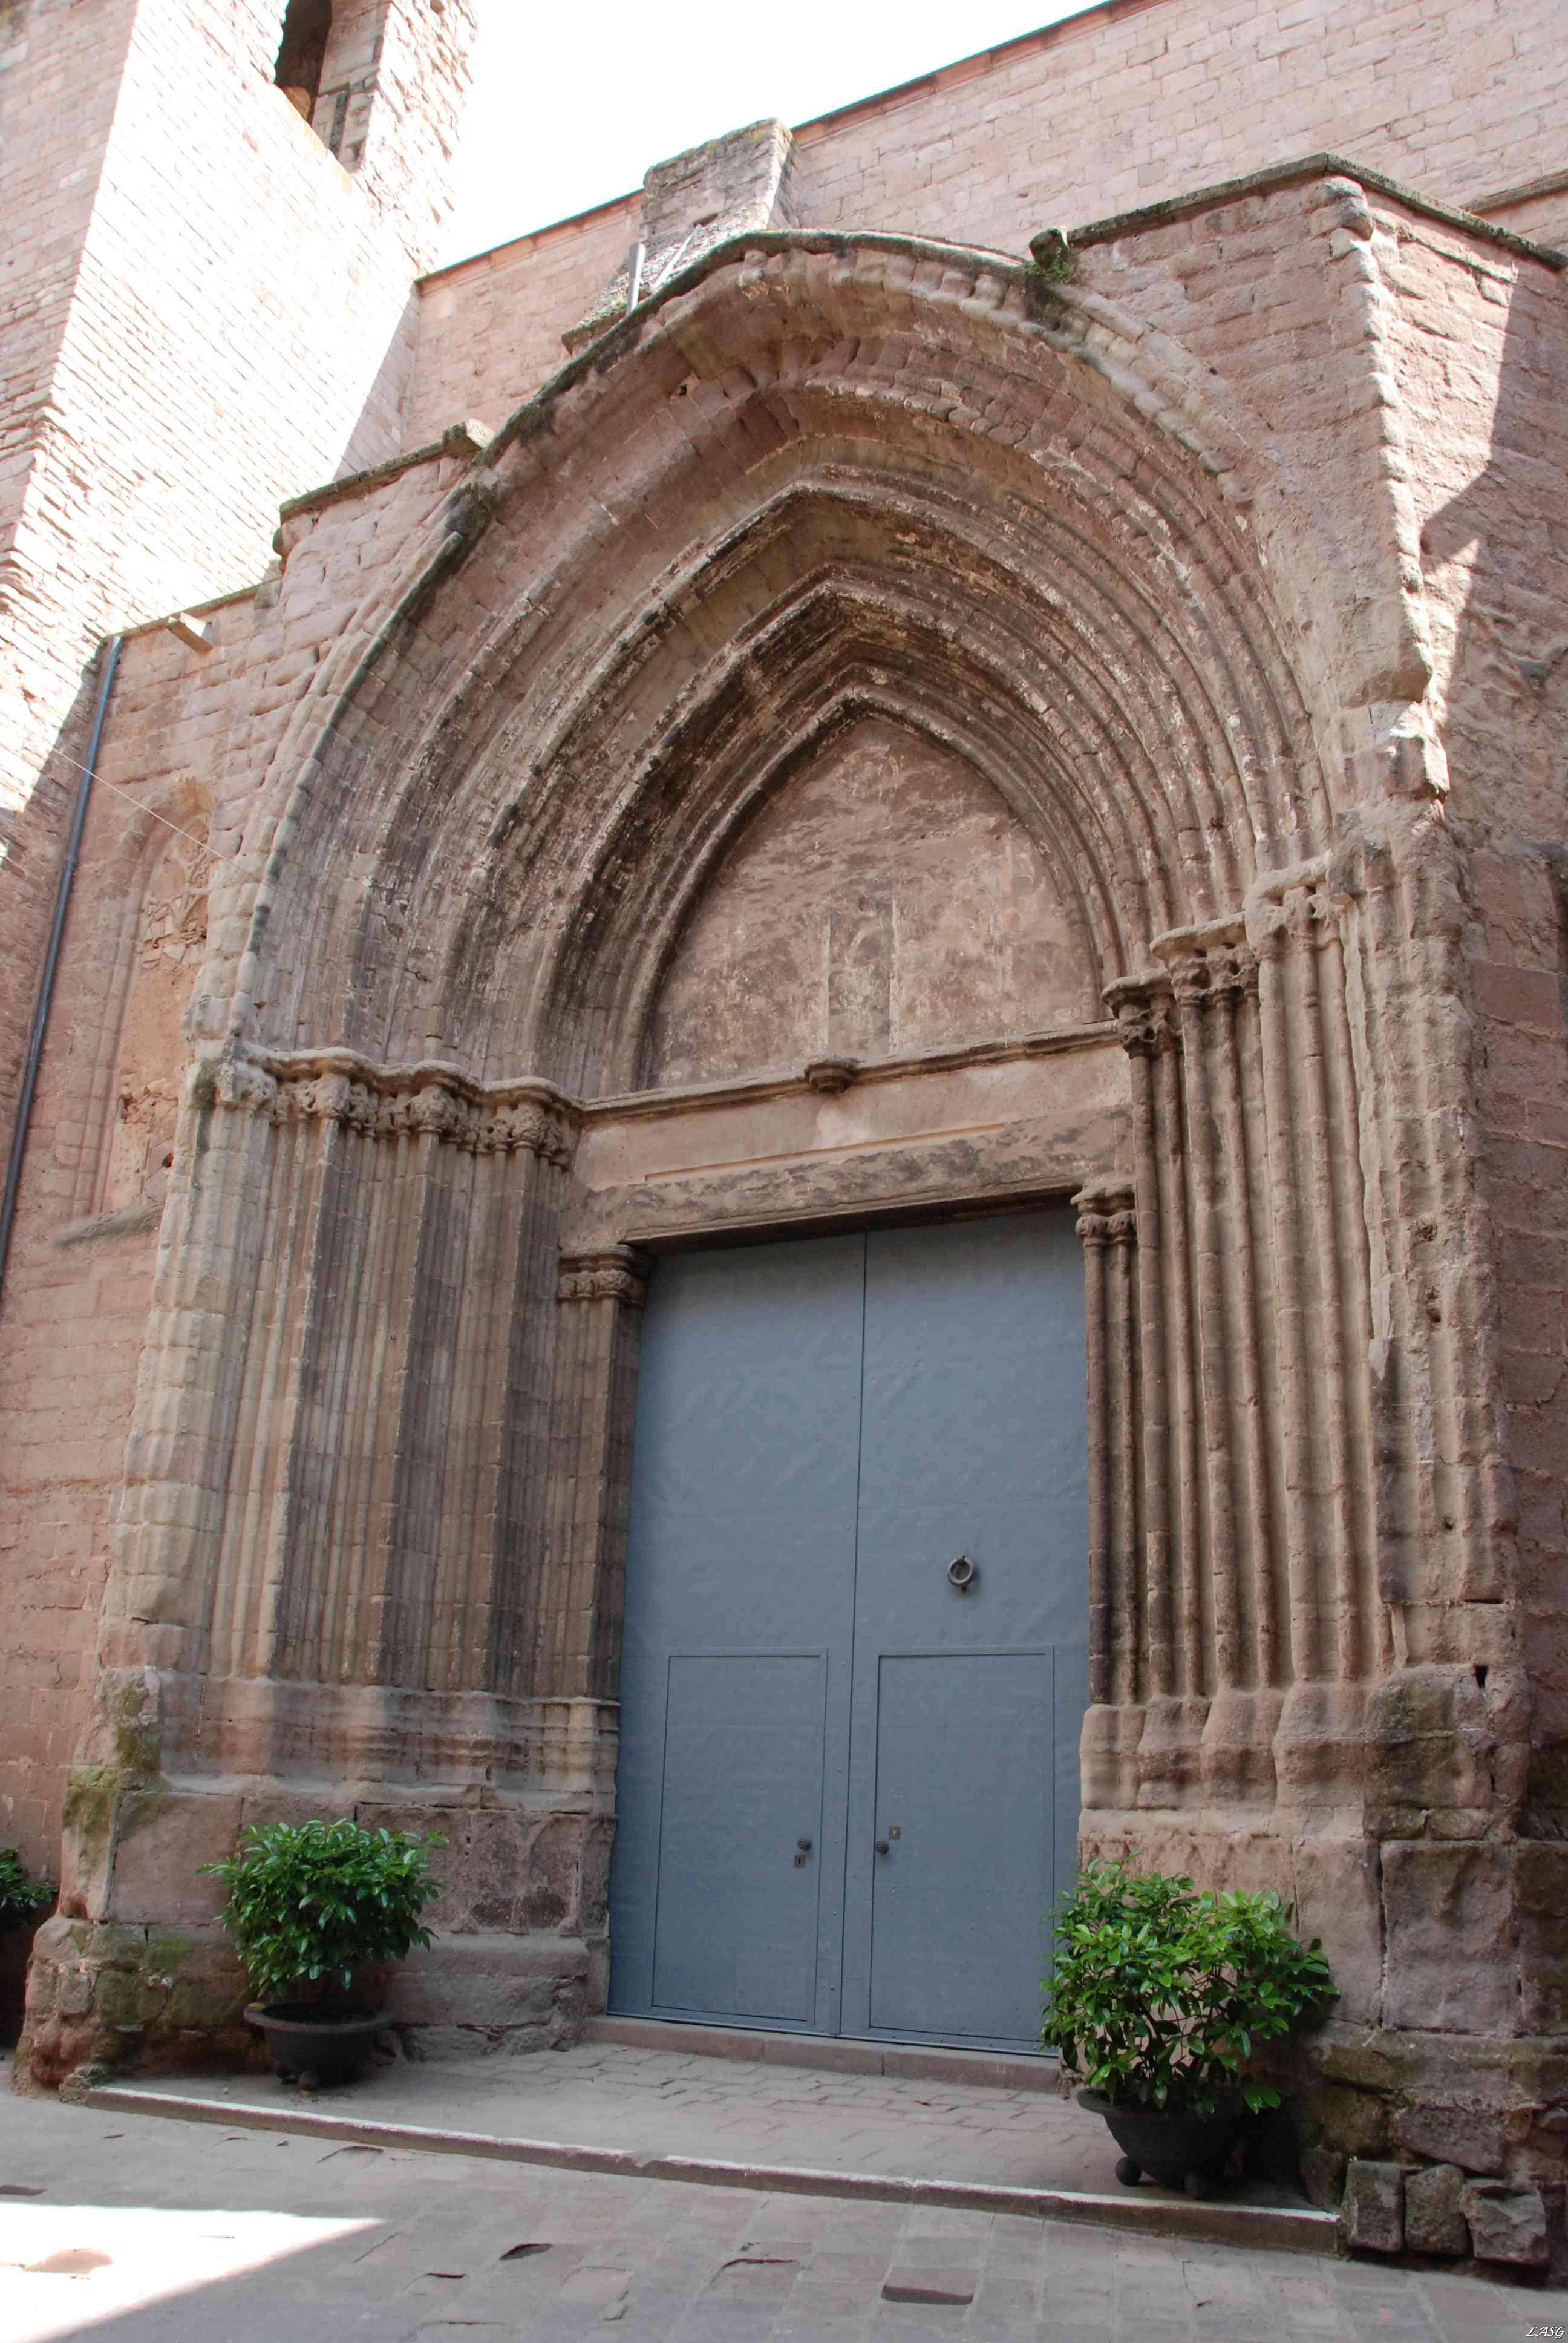 Cardona - A katedrális egyik bejárata